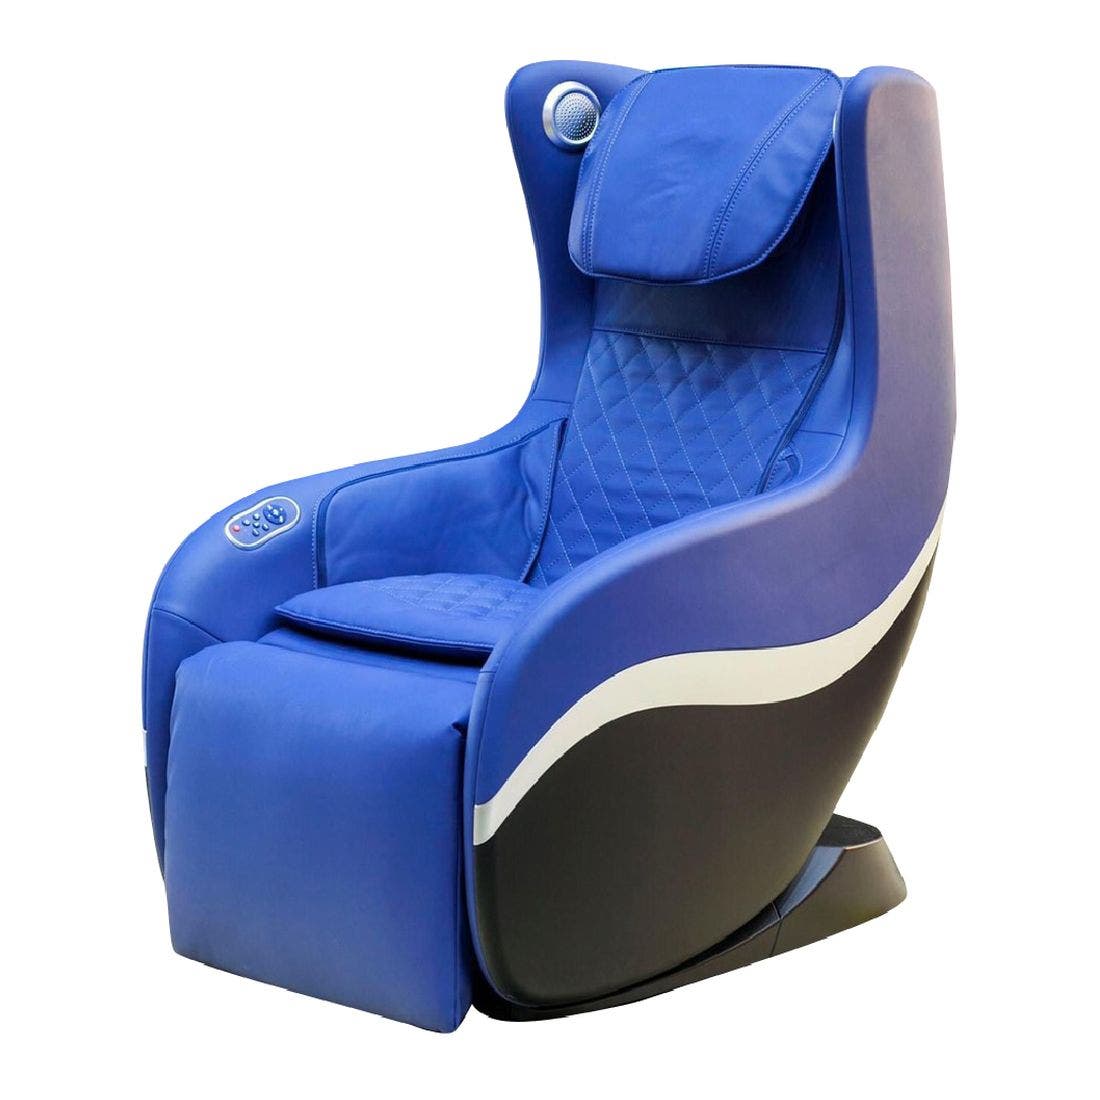 สินค้าเพื่อสุขภาพ เก้าอี้นวดไฟฟ้า สีสีฟ้า-SB Design Square